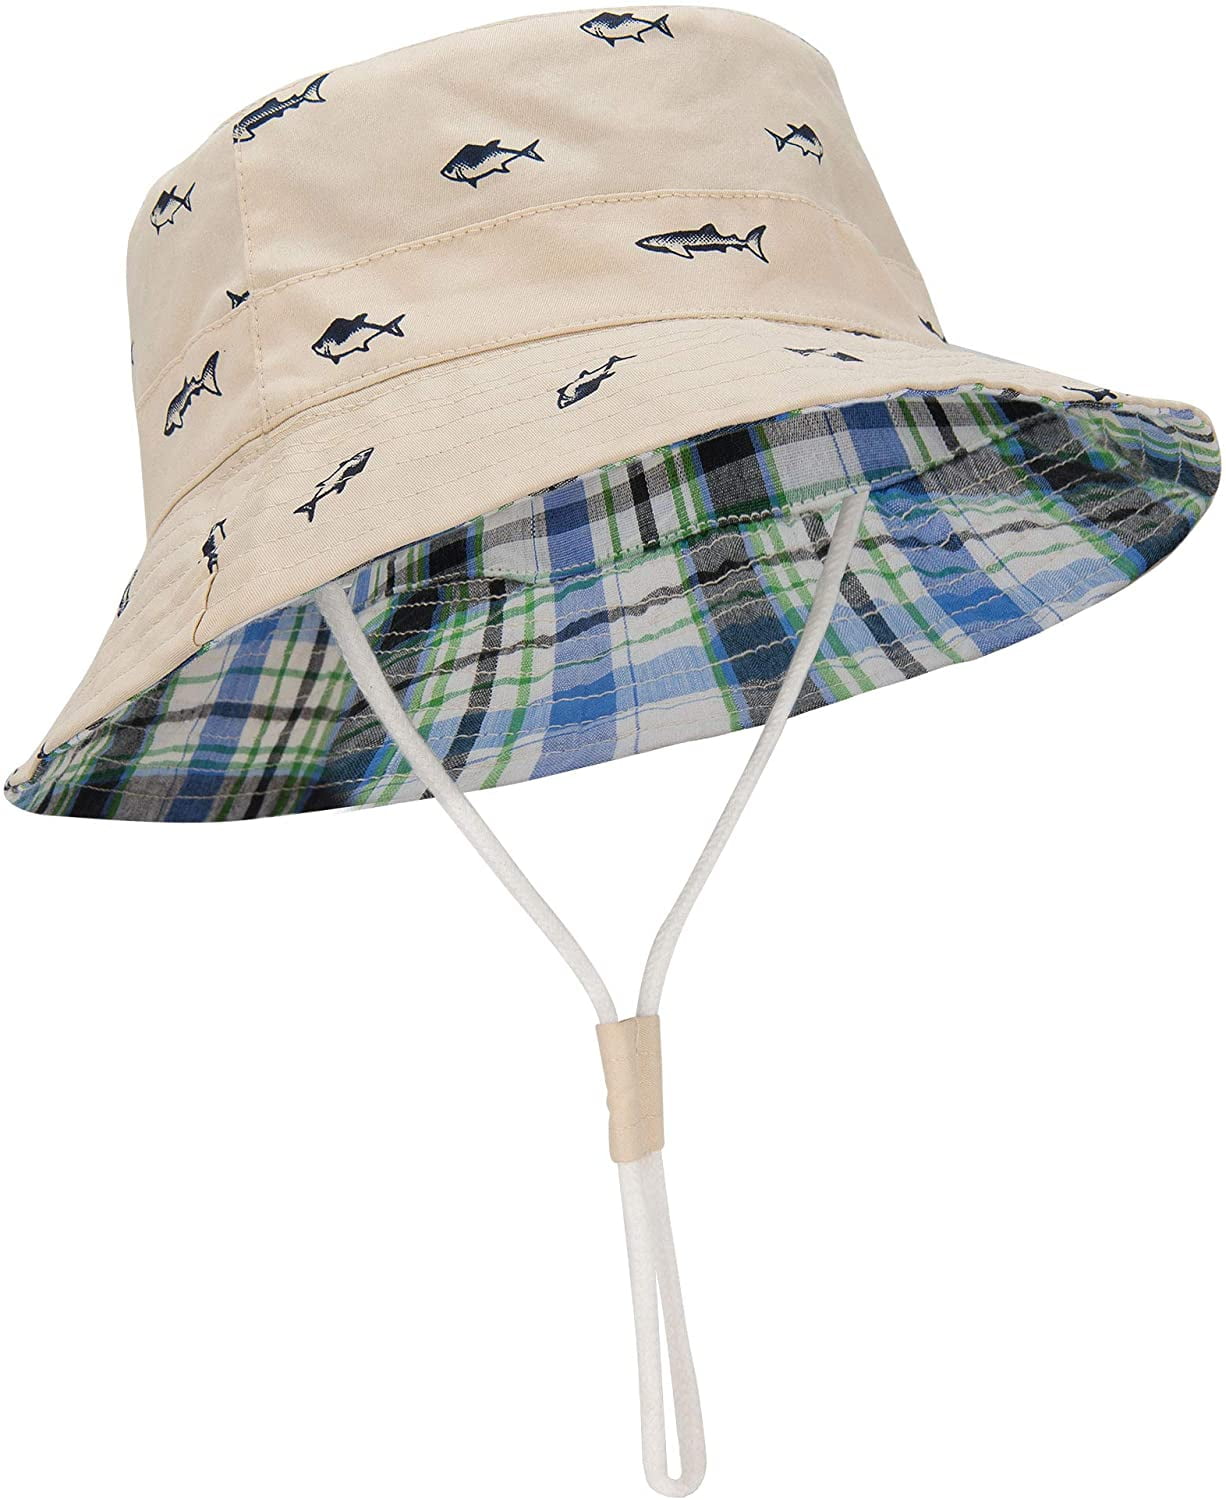  Leotruny Men Wide Brim Sun Hats UPF50+ Waterproof